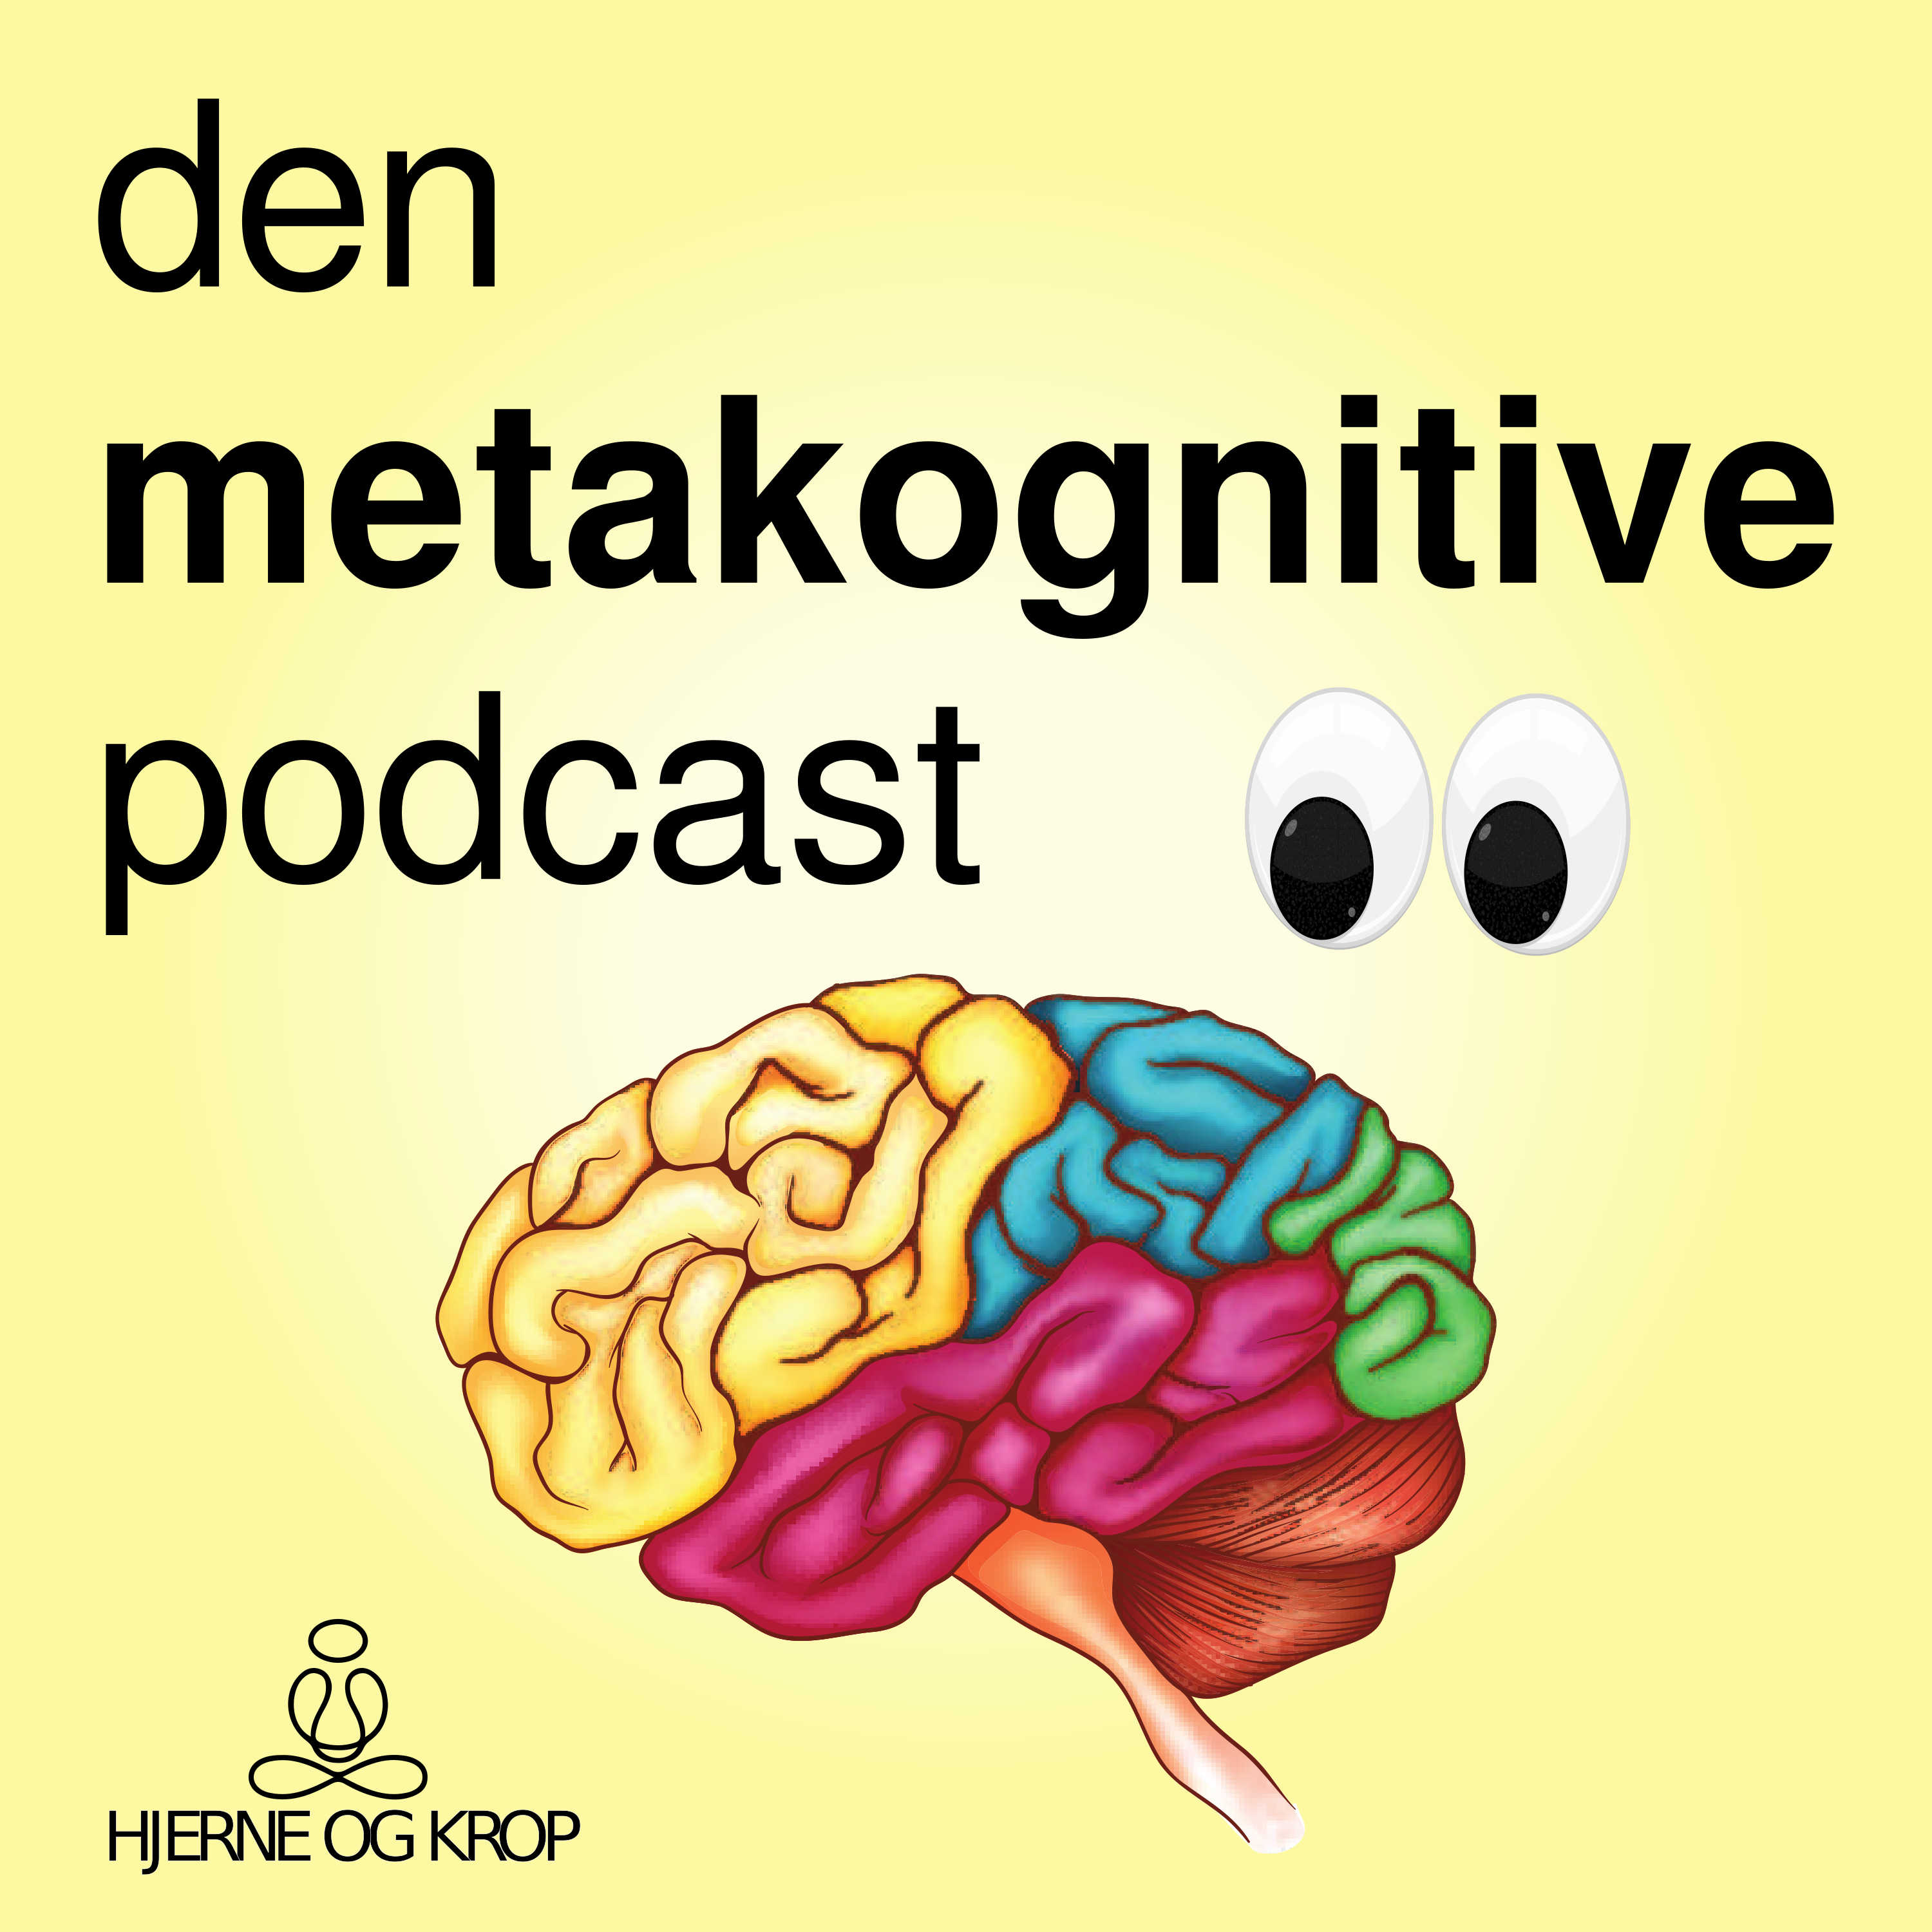 Den metakognitive podcast - metakognitiv psykologi, metakognitiv terapi og mindfulness